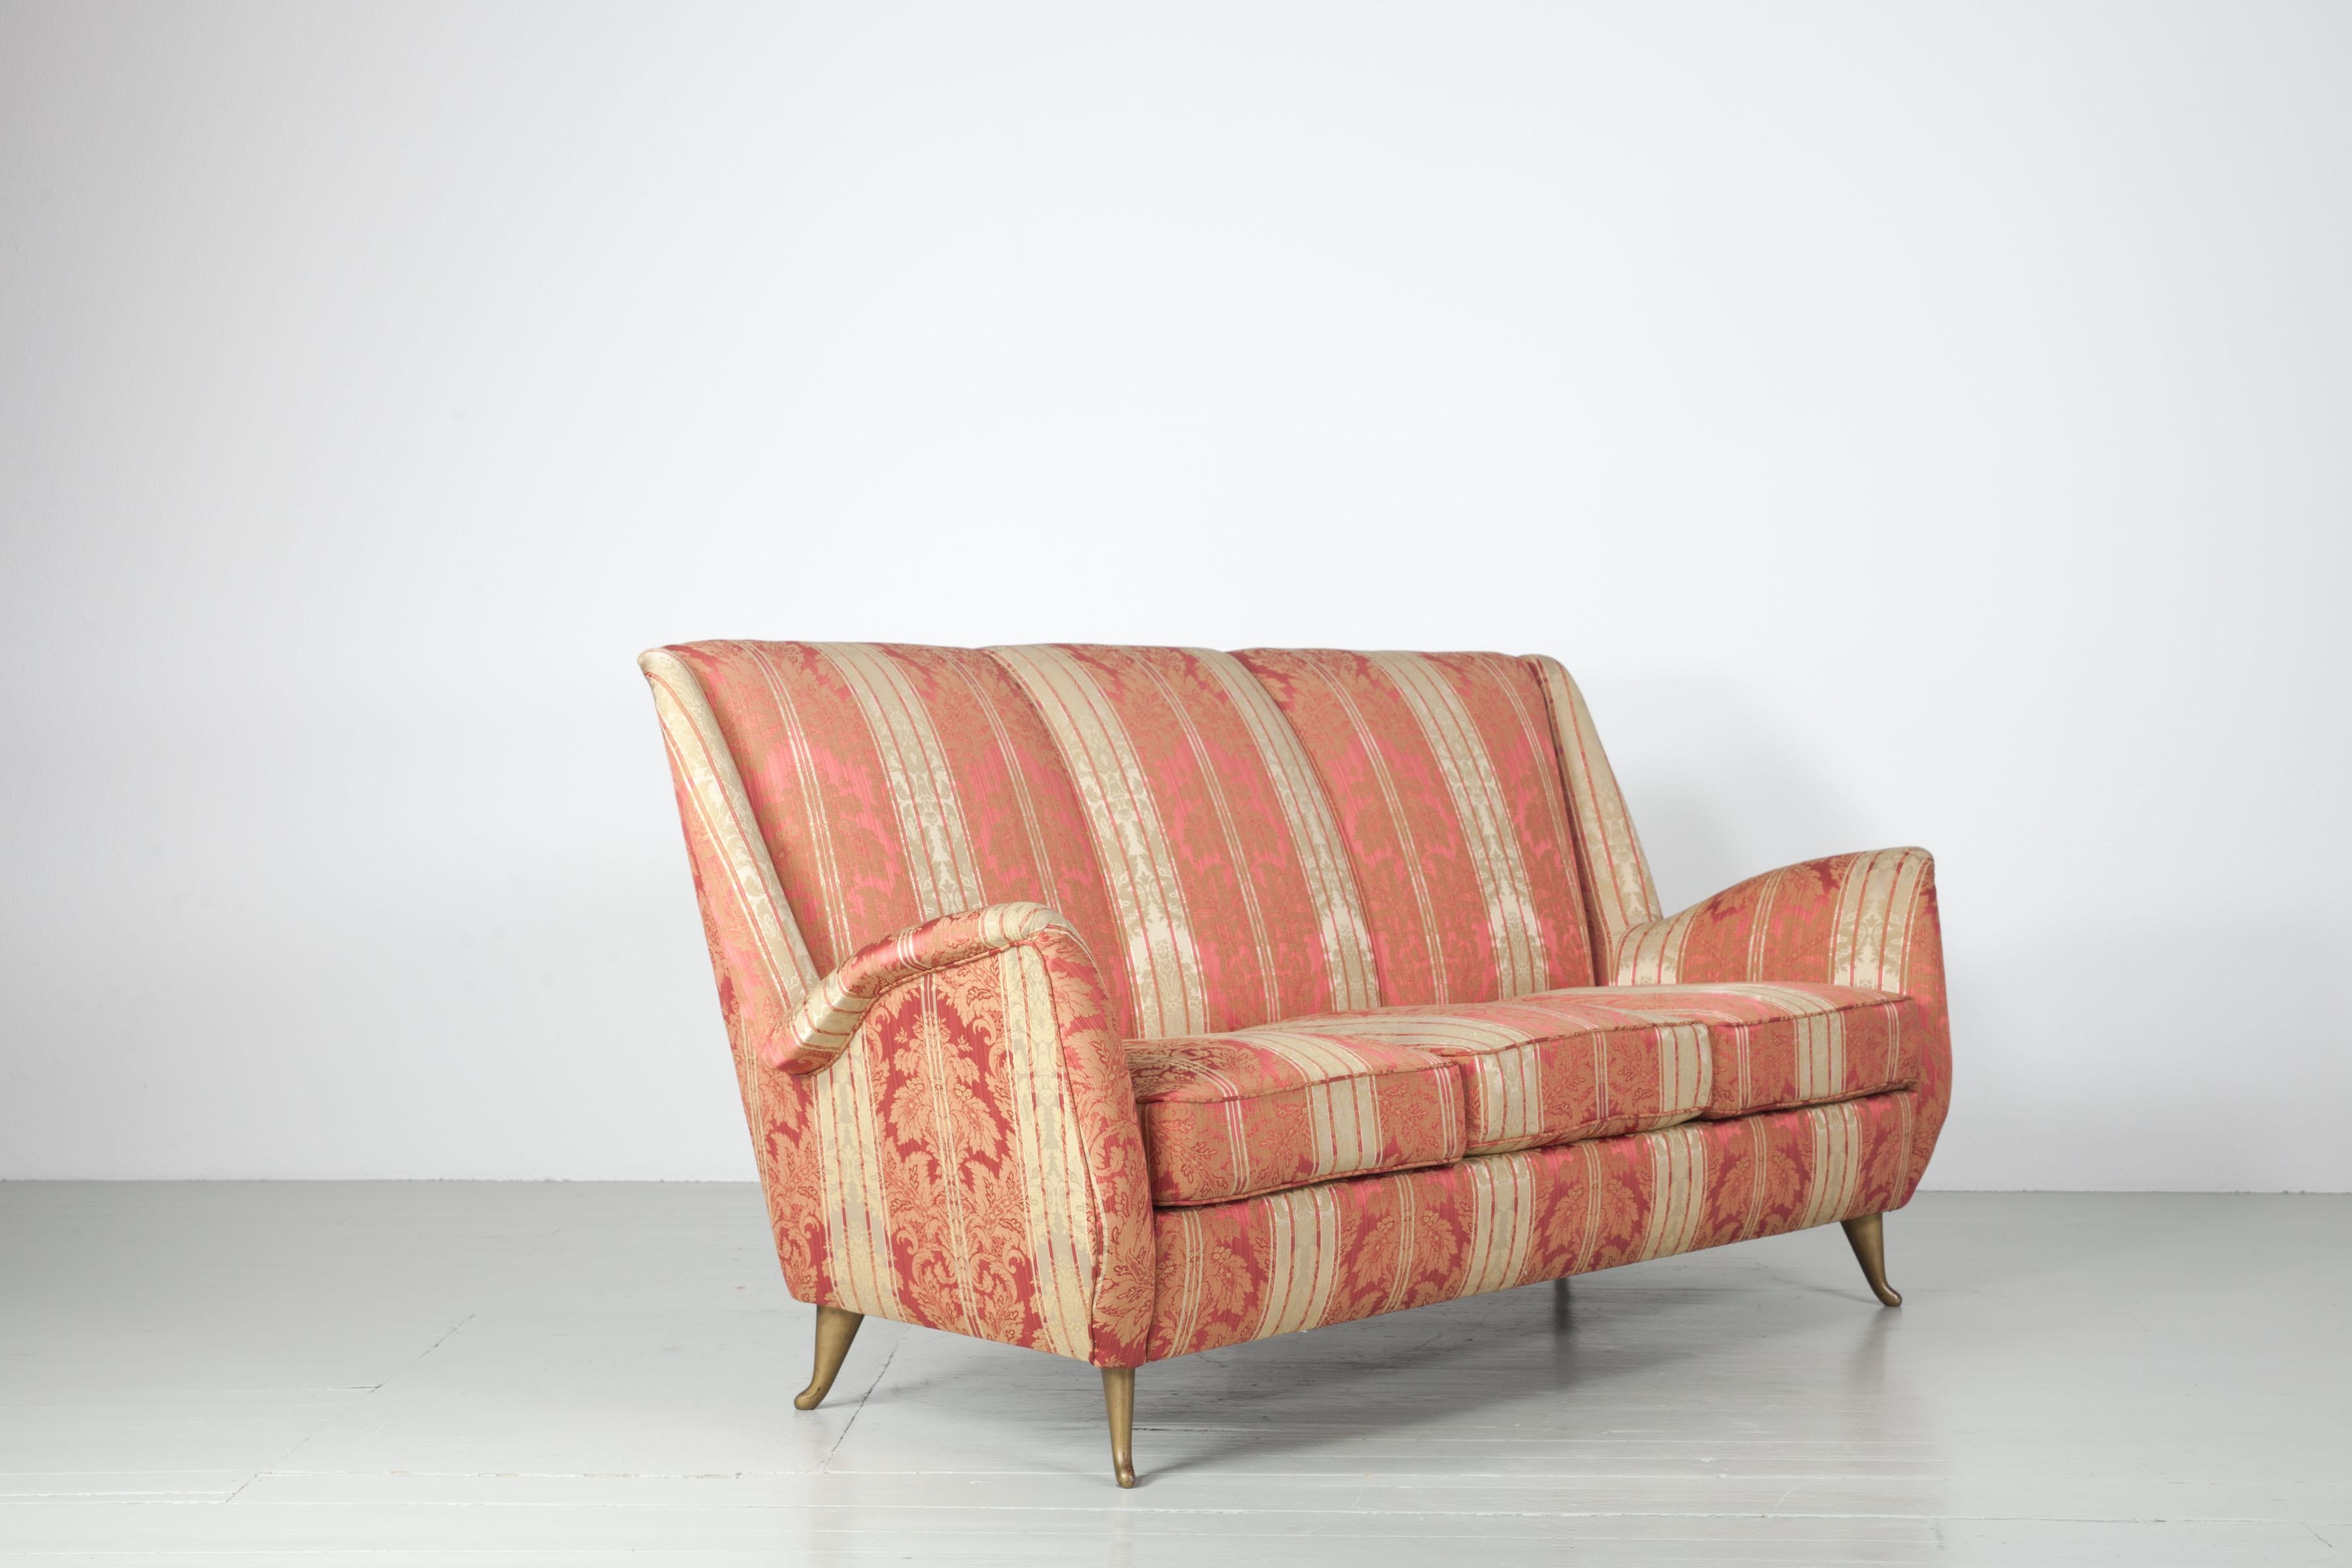 Diese Sofagarnitur wurde in den 1950er Jahren vom Hersteller I.S.A. produziert. Es besteht aus zwei Sesseln und einem Sofa, die sich alle in einem außergewöhnlich guten Originalzustand befinden. Die besonders originelle Polsterung mit schimmernden